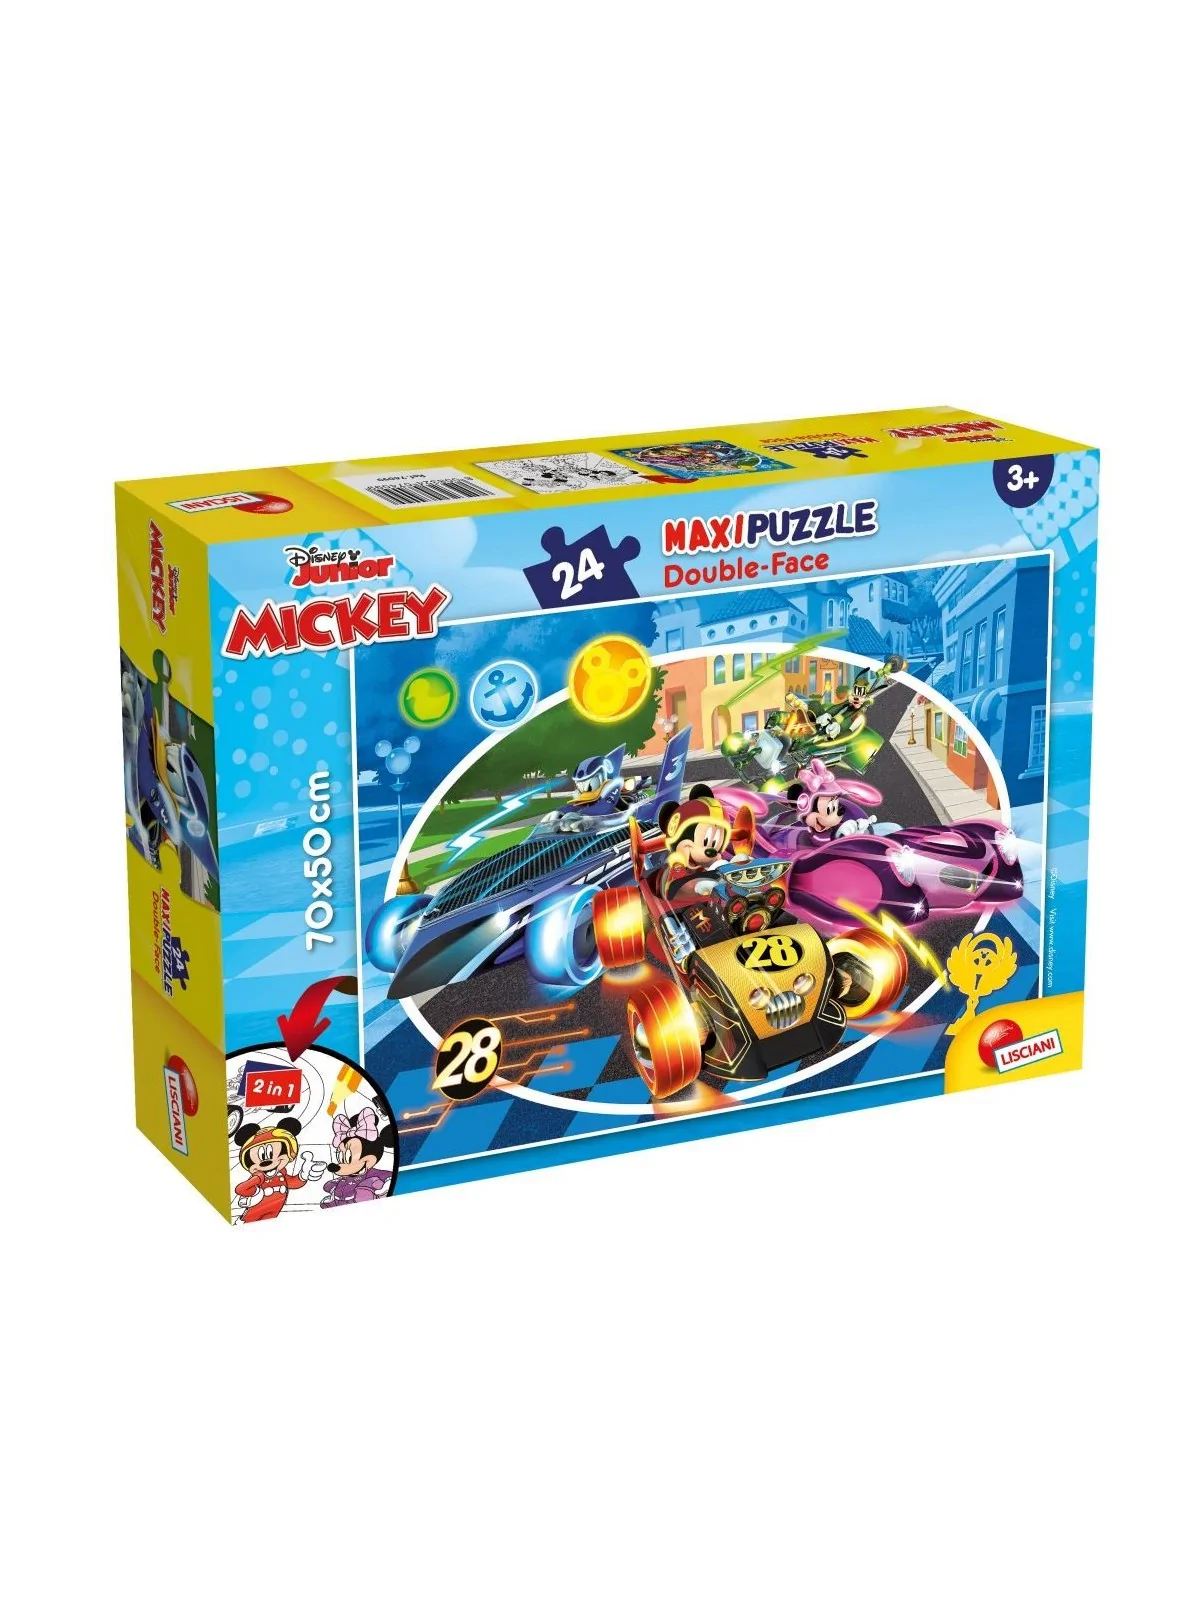 Maxi Puzzle Mickey 24 pcs